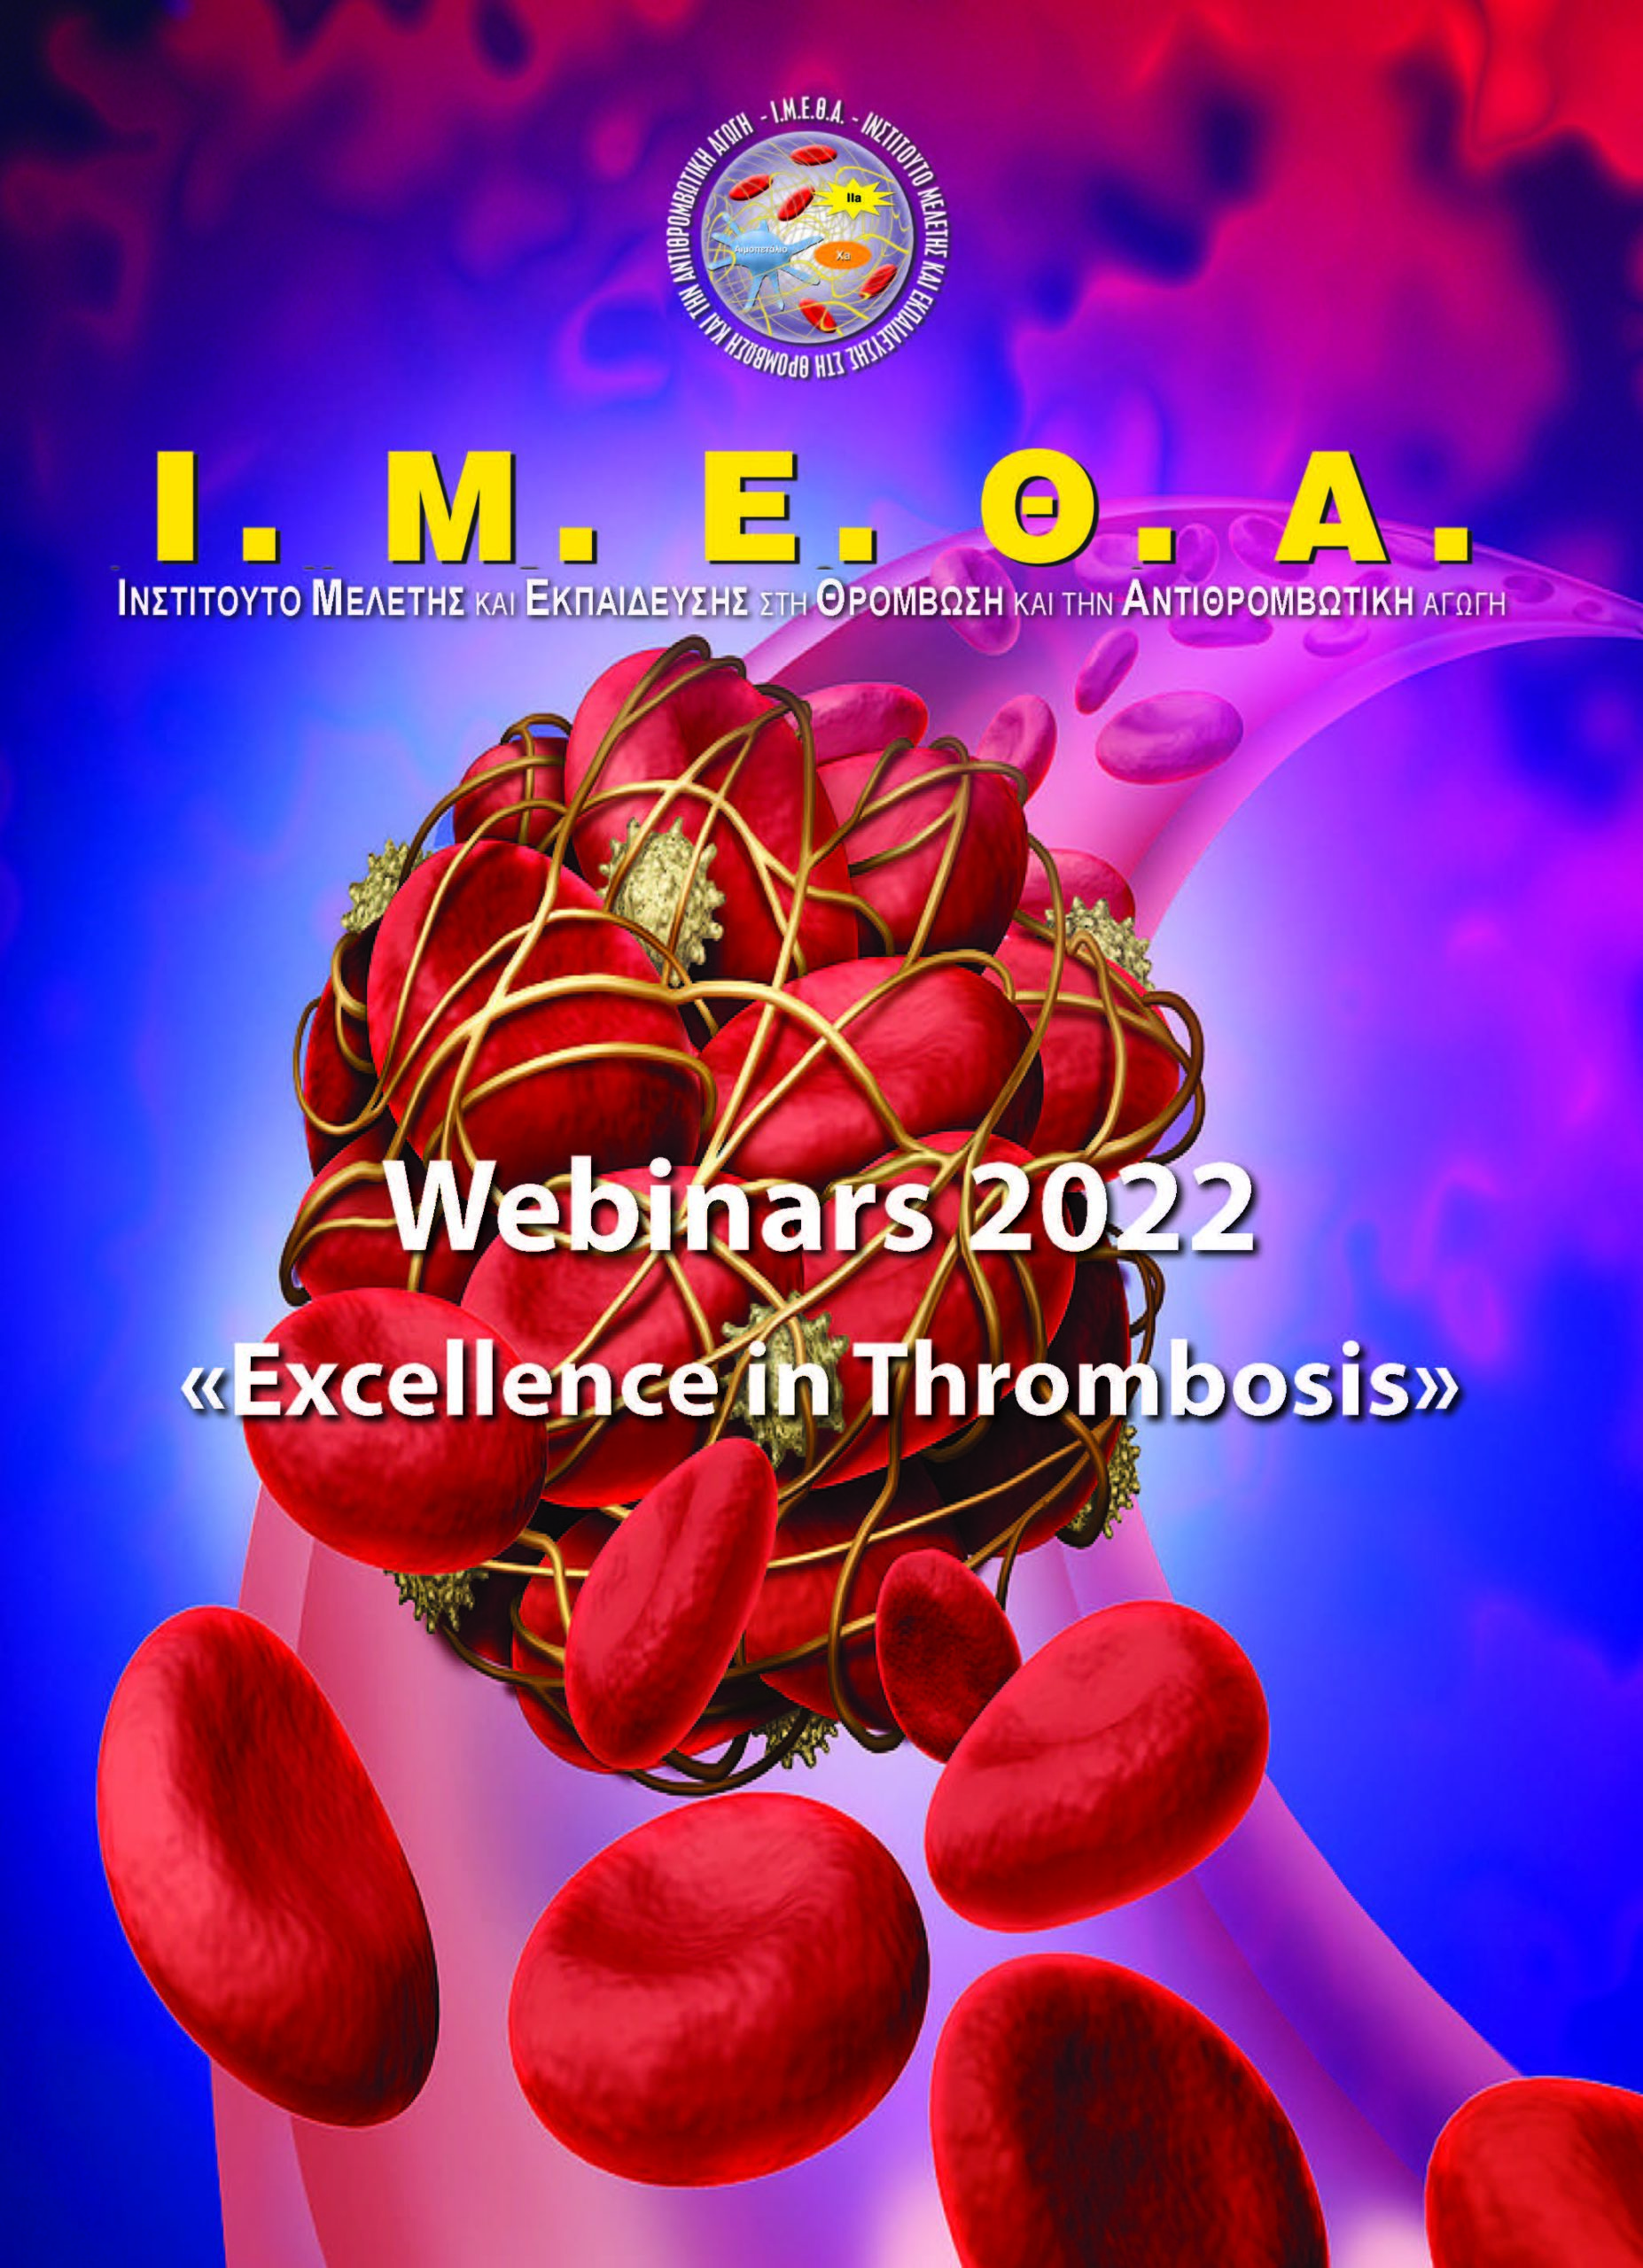 2ο Webinar Ι.Μ.Ε.Θ.Α. "Excellence in Thrombosis" - Δ. Ρίχτερ